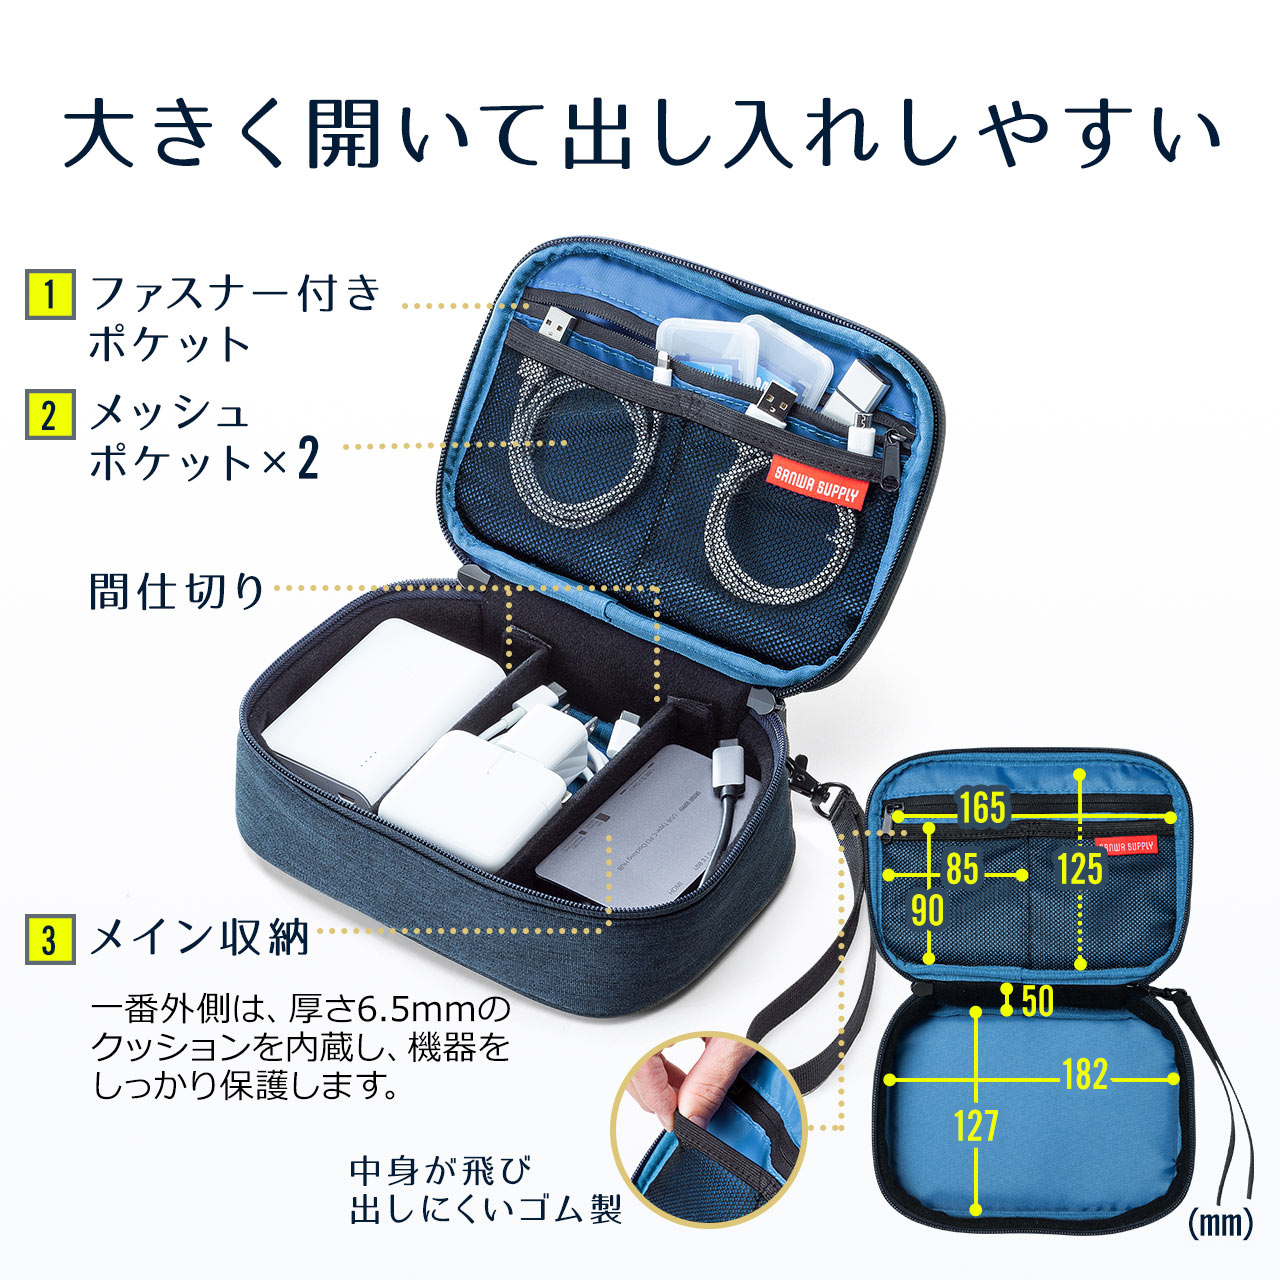 トラベルポーチ 3ポケット ストラップ付き グレー PC周辺機器 旅行用品 